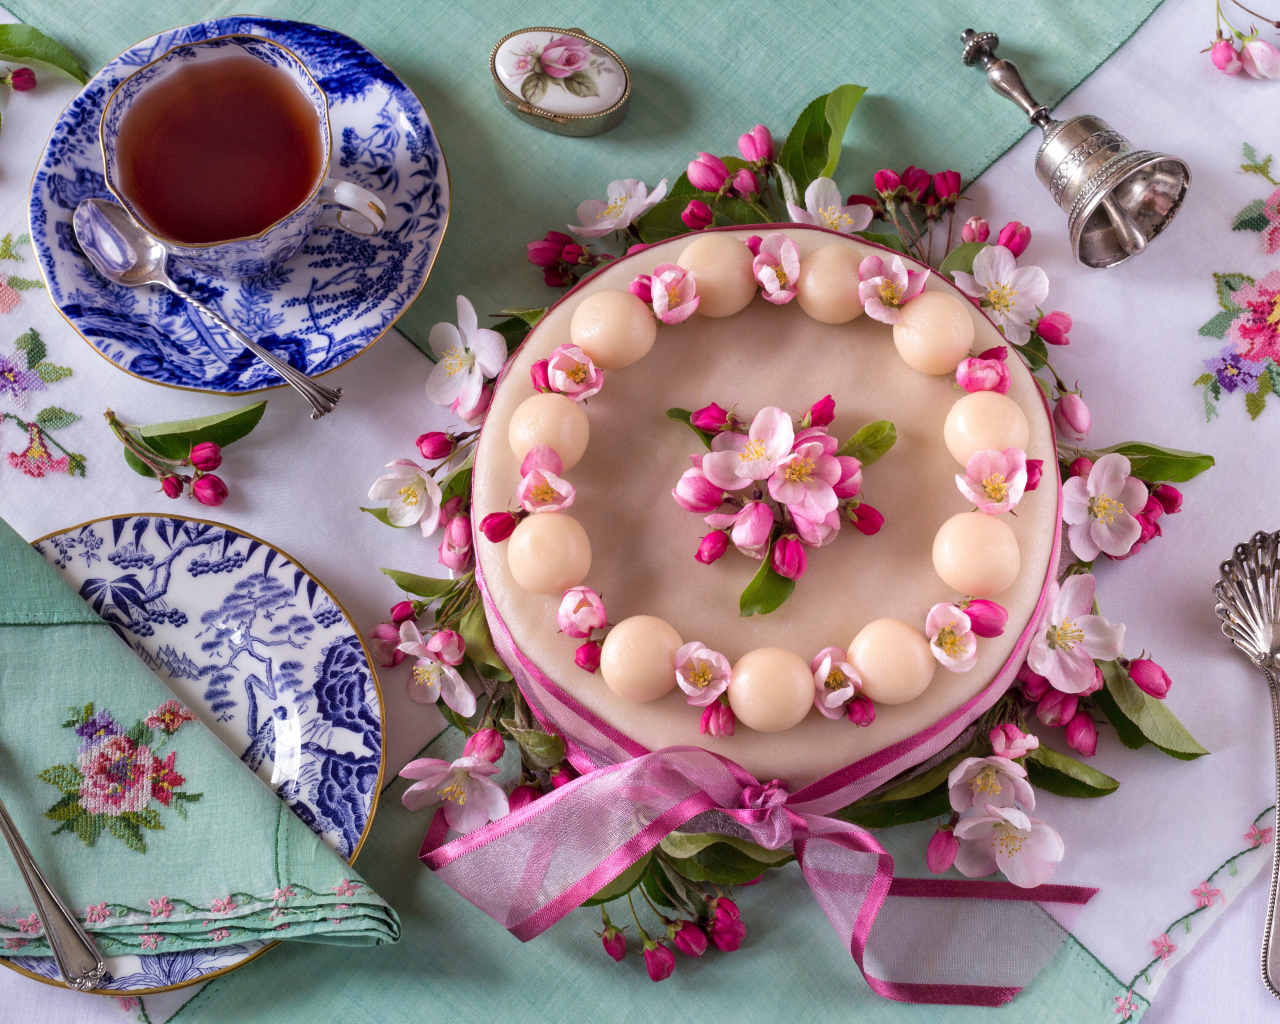 Торт с розовыми цветами на столе с красивым сервизом 